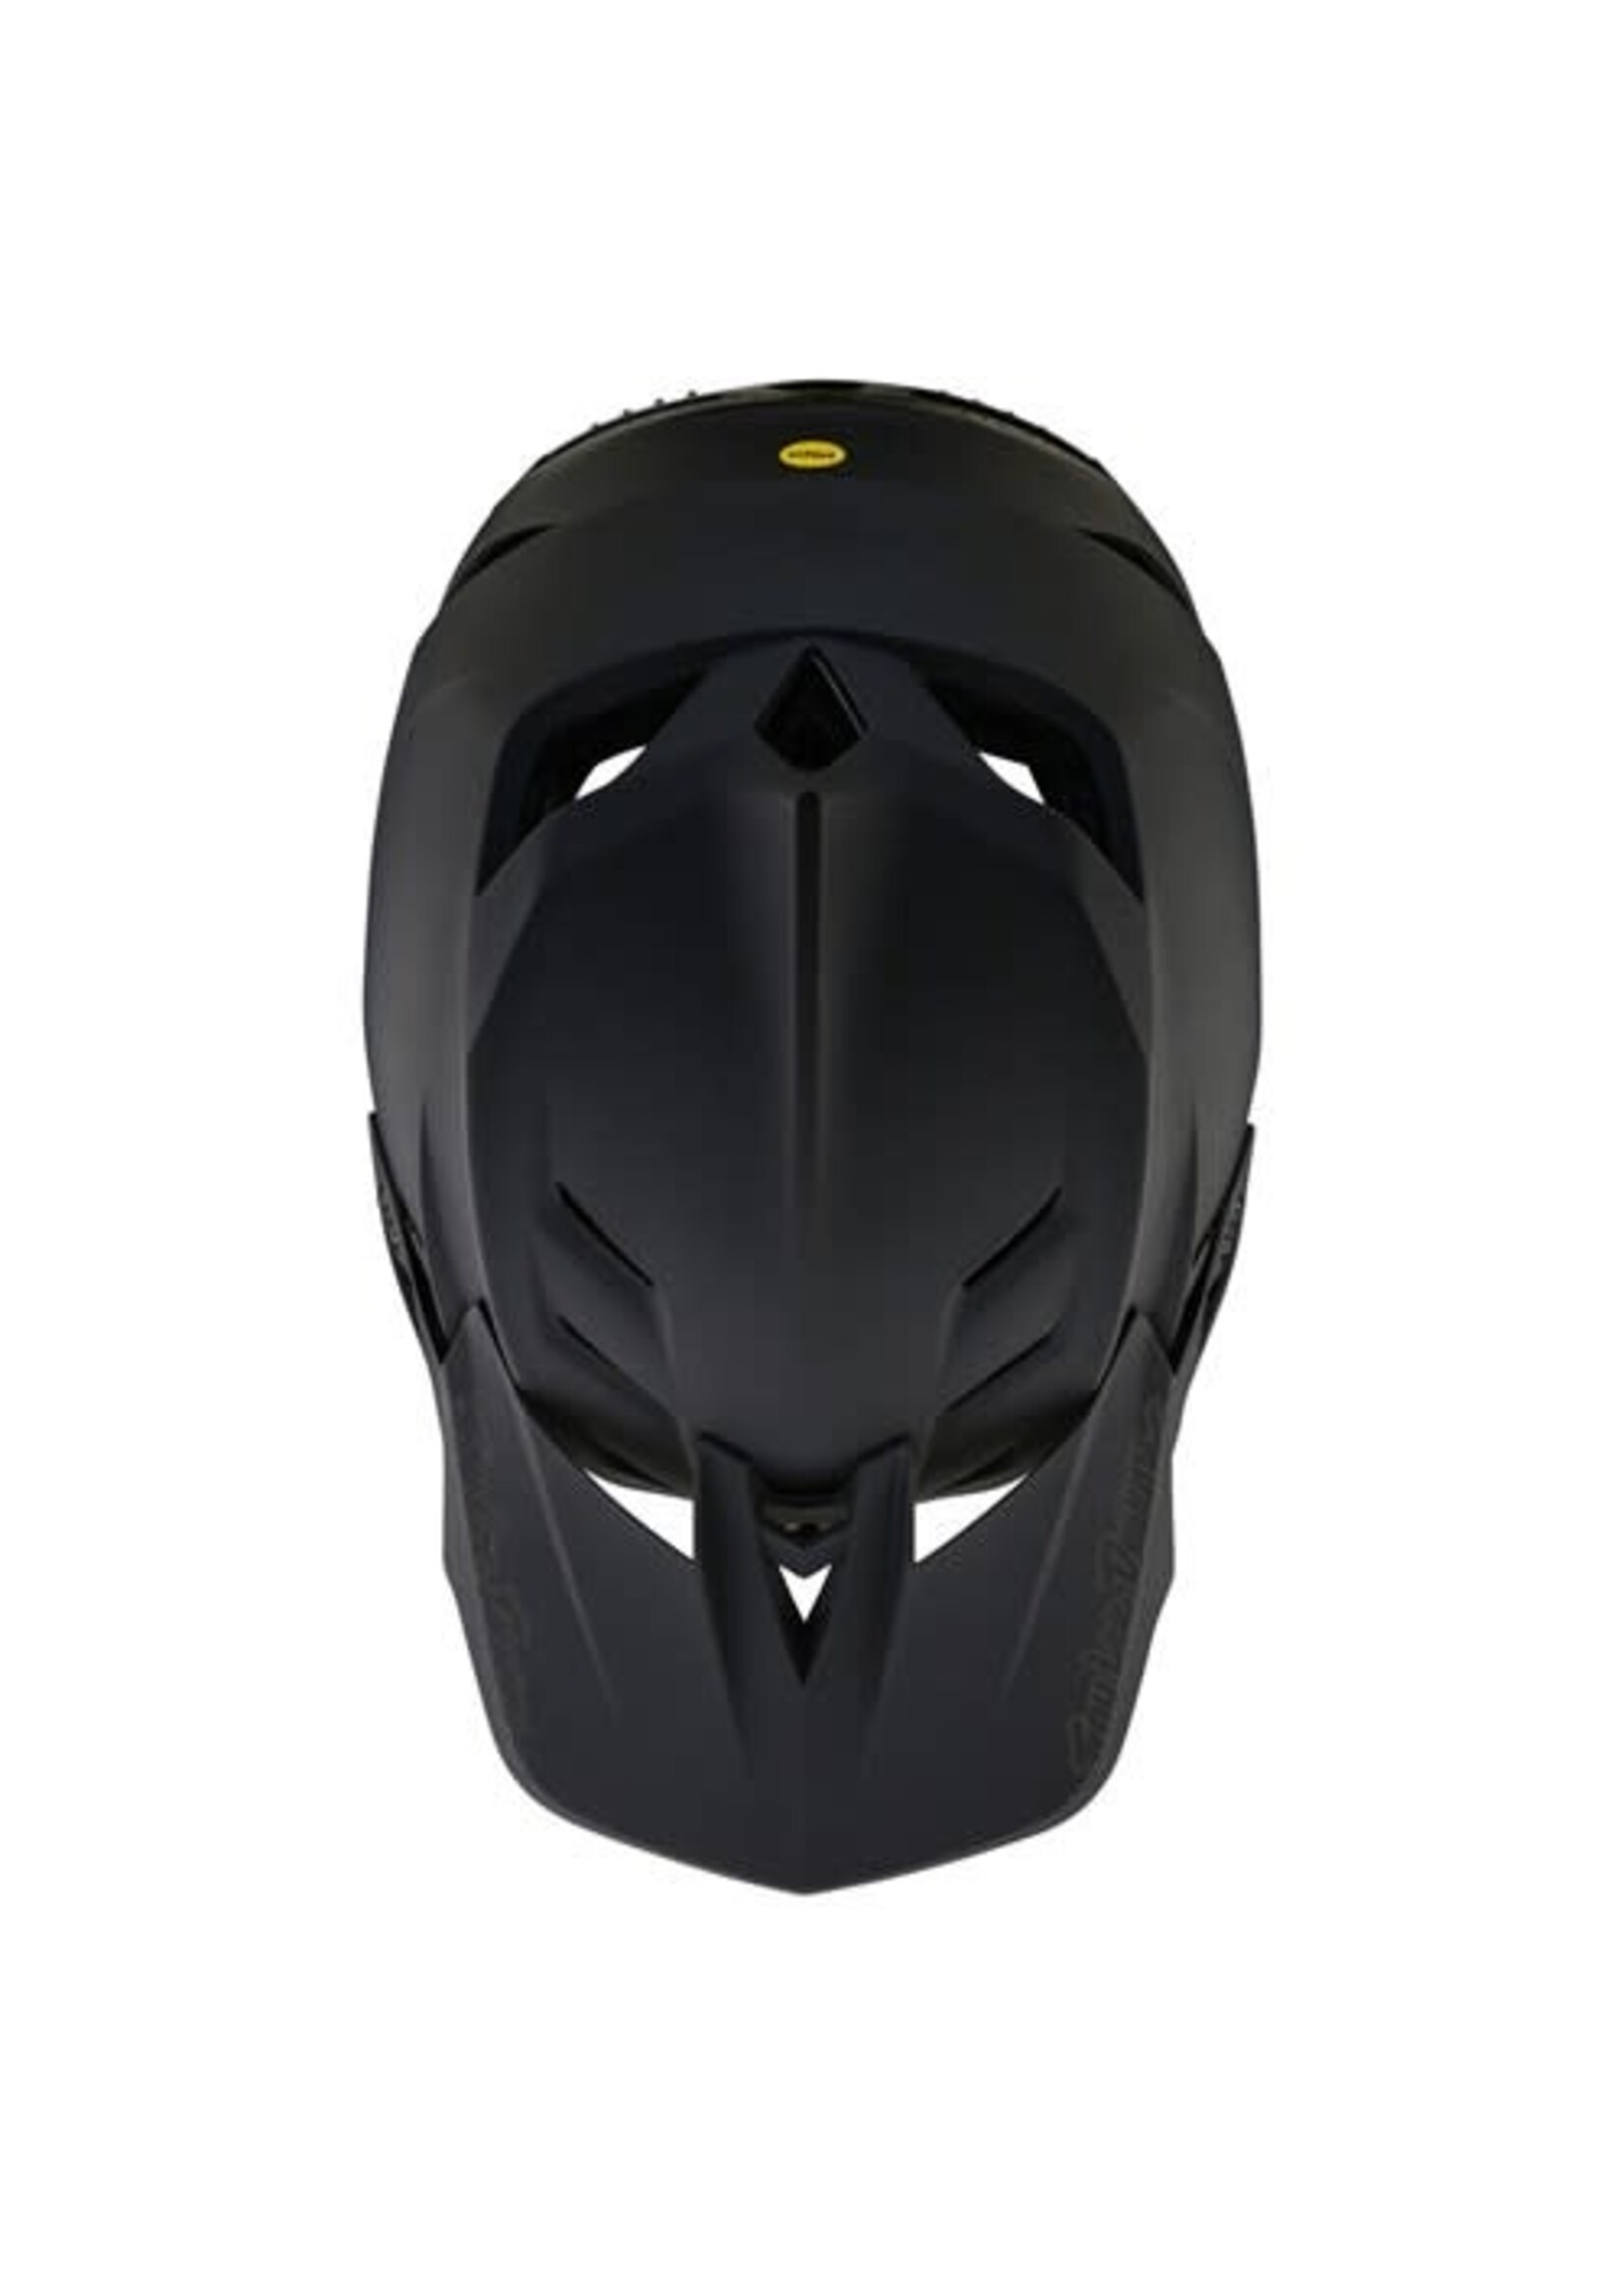 Troylee Designs Helmet TLD 24.1 D4 Composite